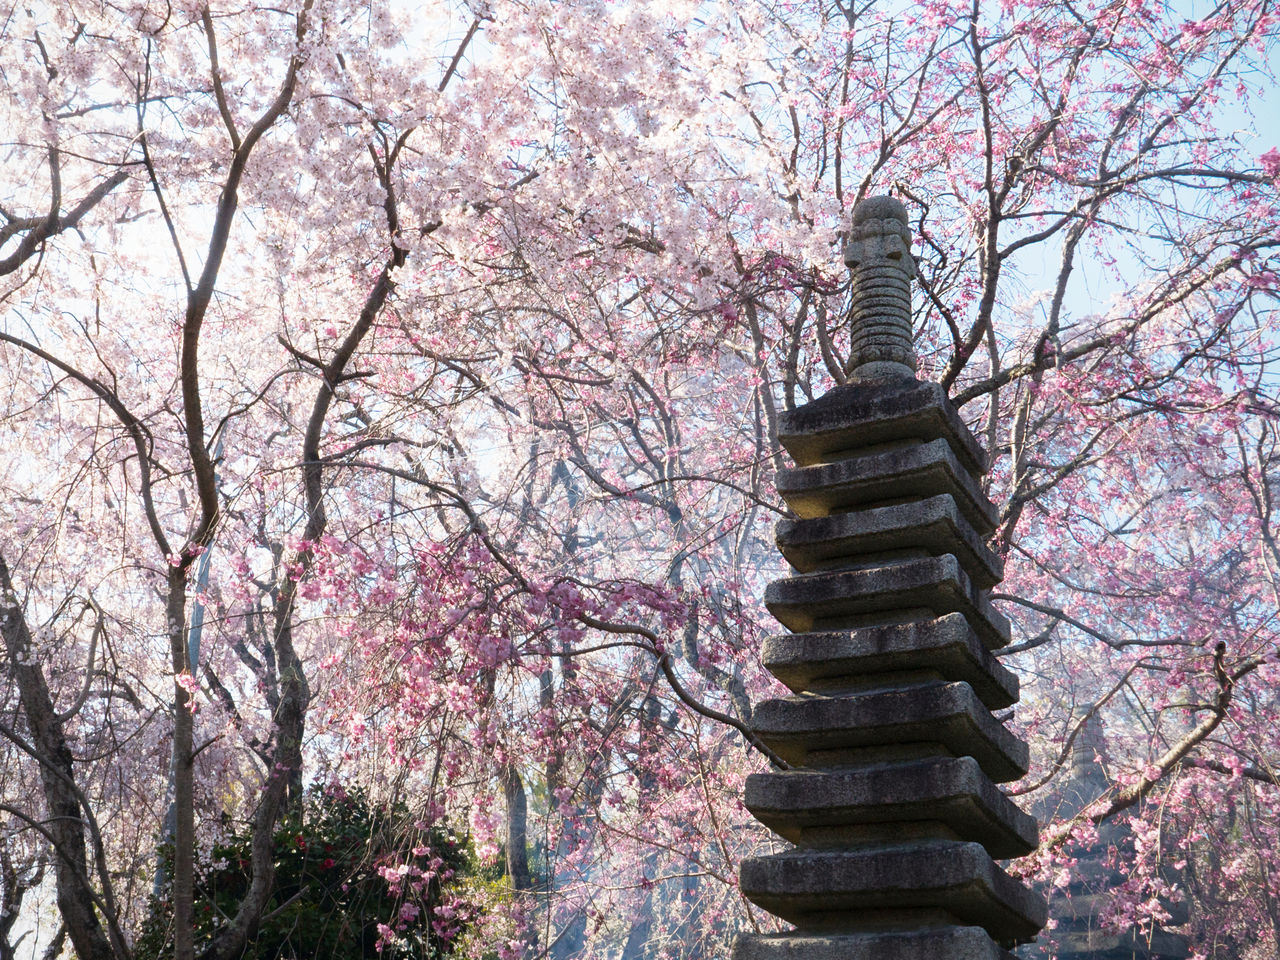 为了体现樱花的美，还专门修建了一座石塔